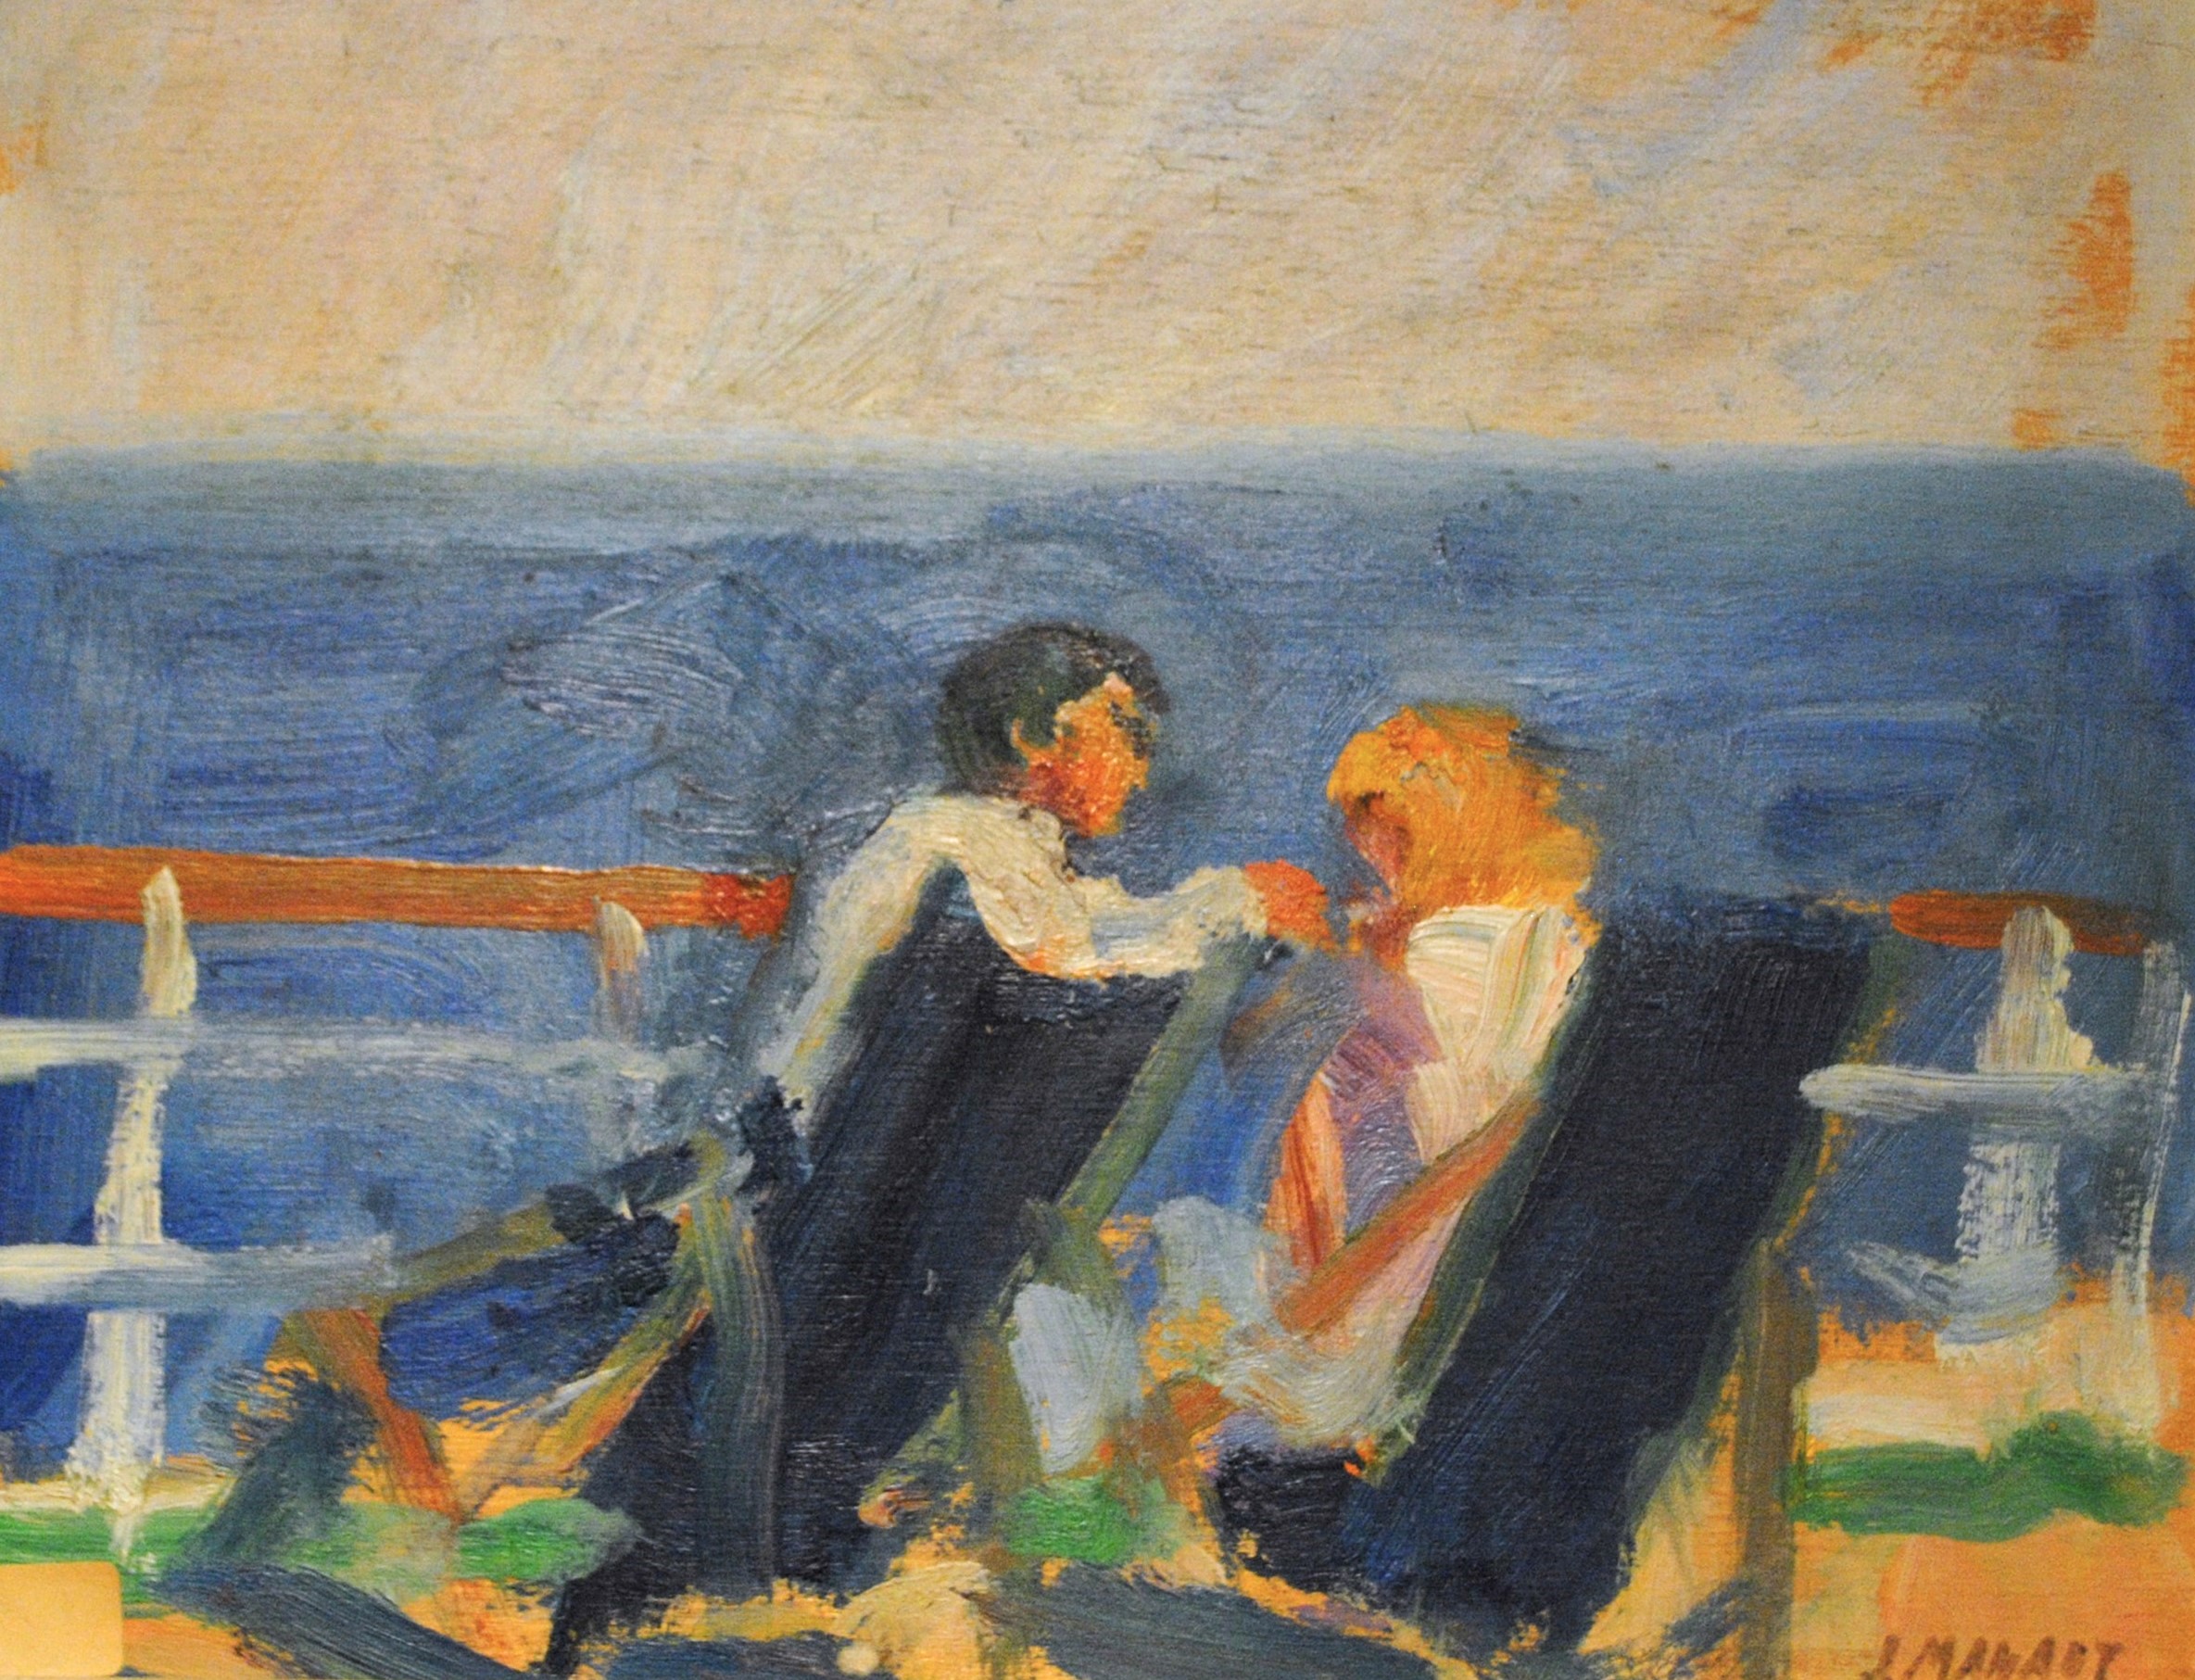 Pintura de José Manaut titulada Barco a Mallorca, 1951. Óleo sobre lienzo.